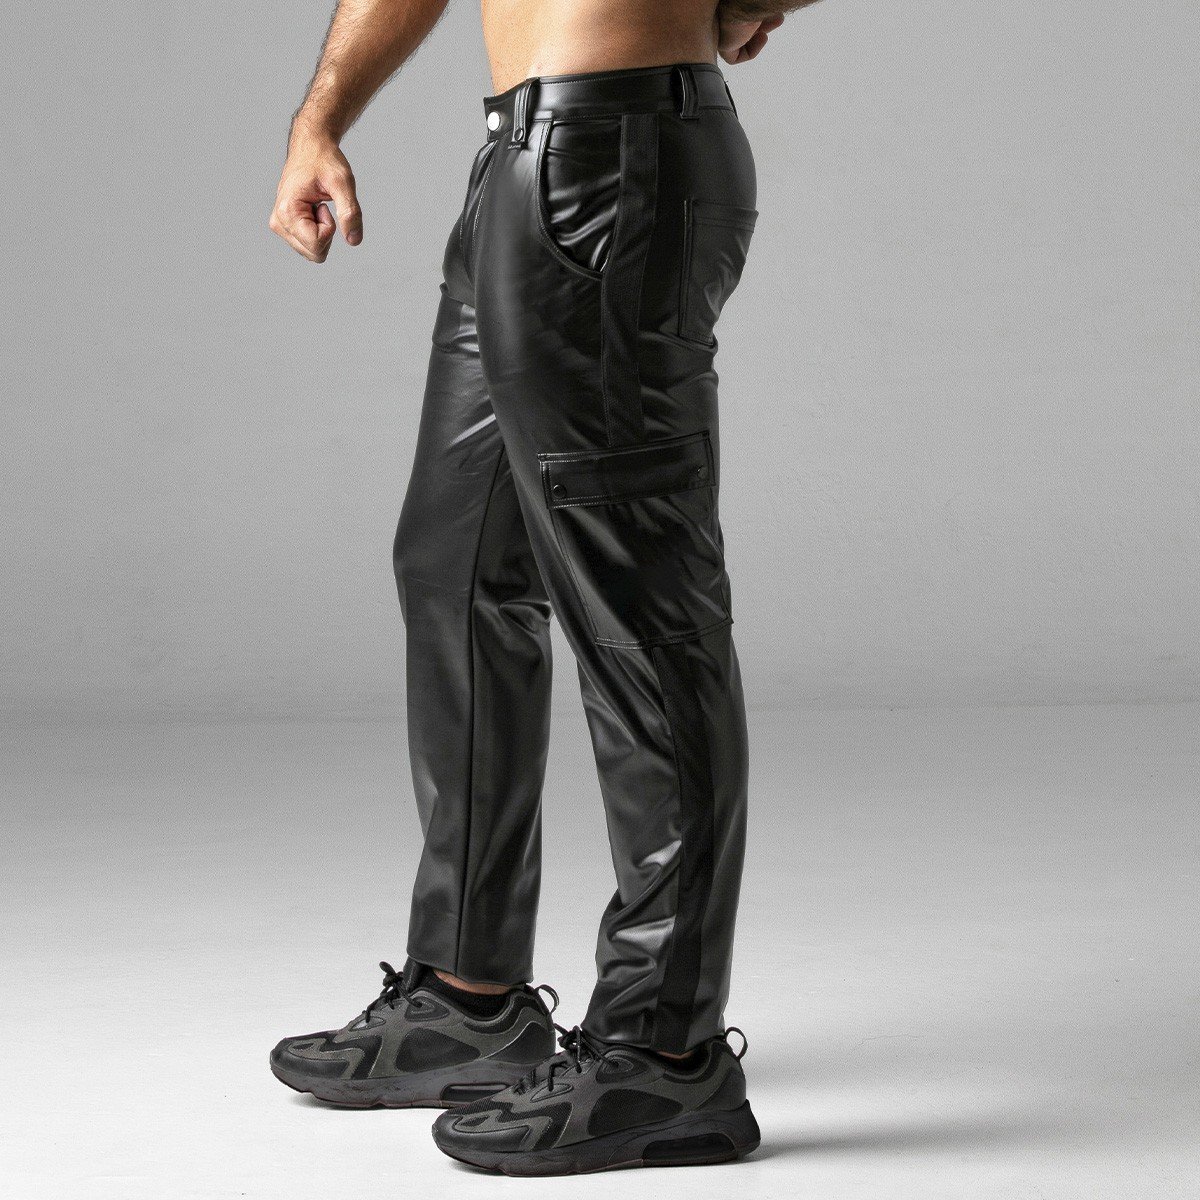 Kalhoty Locker Gear LK0965 Massive Rude Pant černé L, pánské kalhoty se zipem vzadu